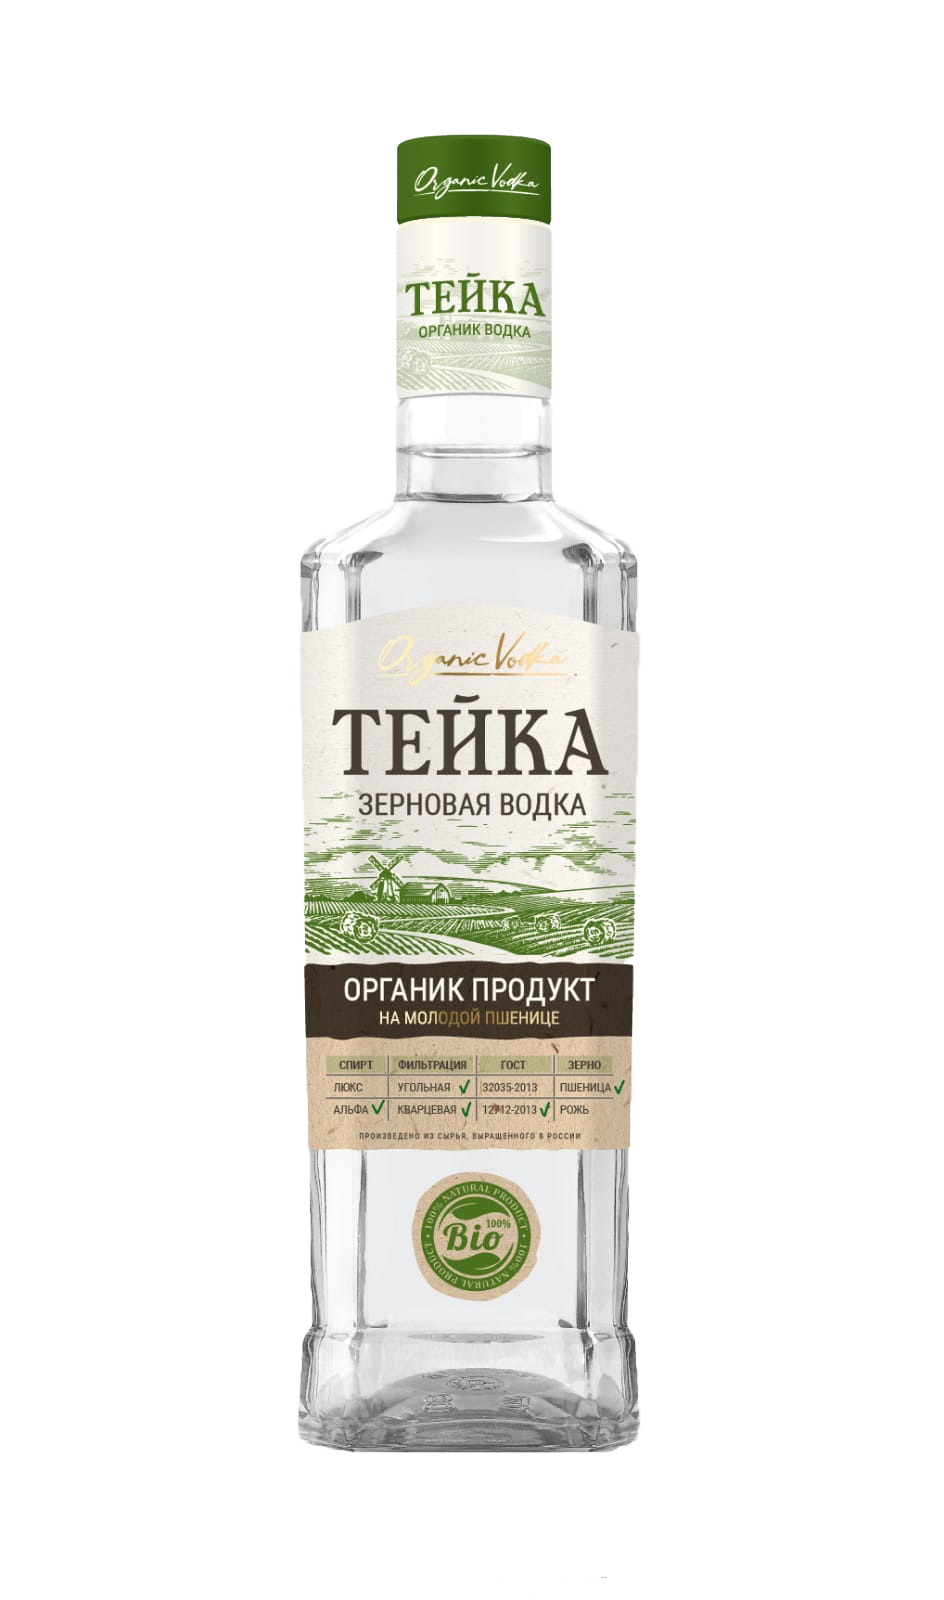 Vodka TEIKA